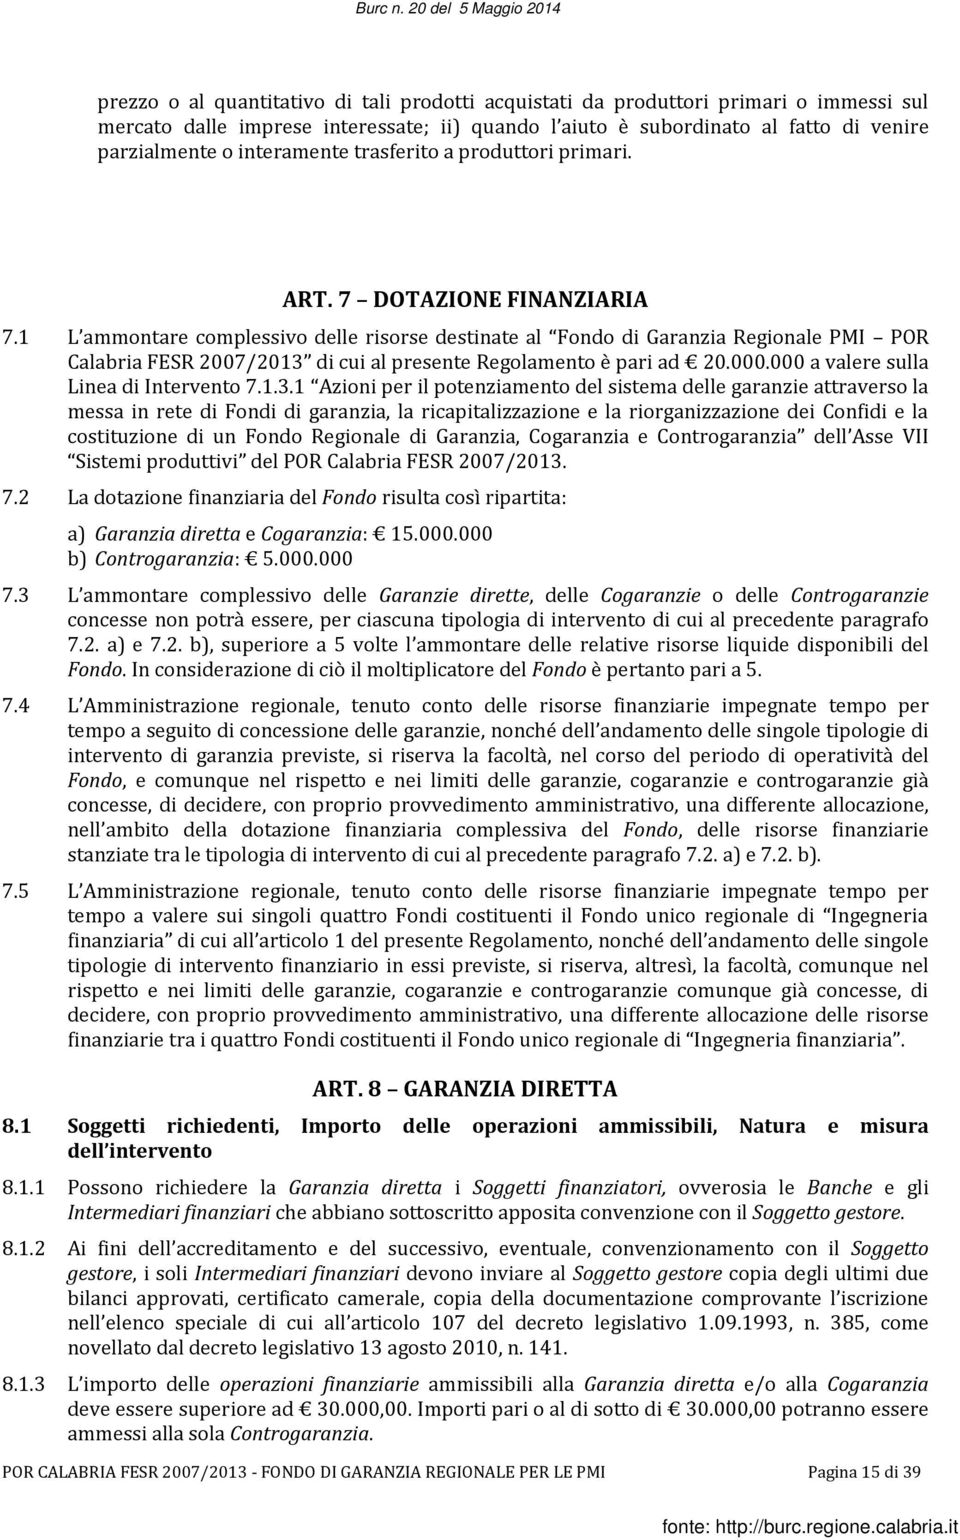 1 L ammontare complessivo delle risorse destinate al Fondo di Garanzia Regionale PMI POR Calabria FESR 2007/2013 di cui al presente Regolamento è pari ad 20.000.